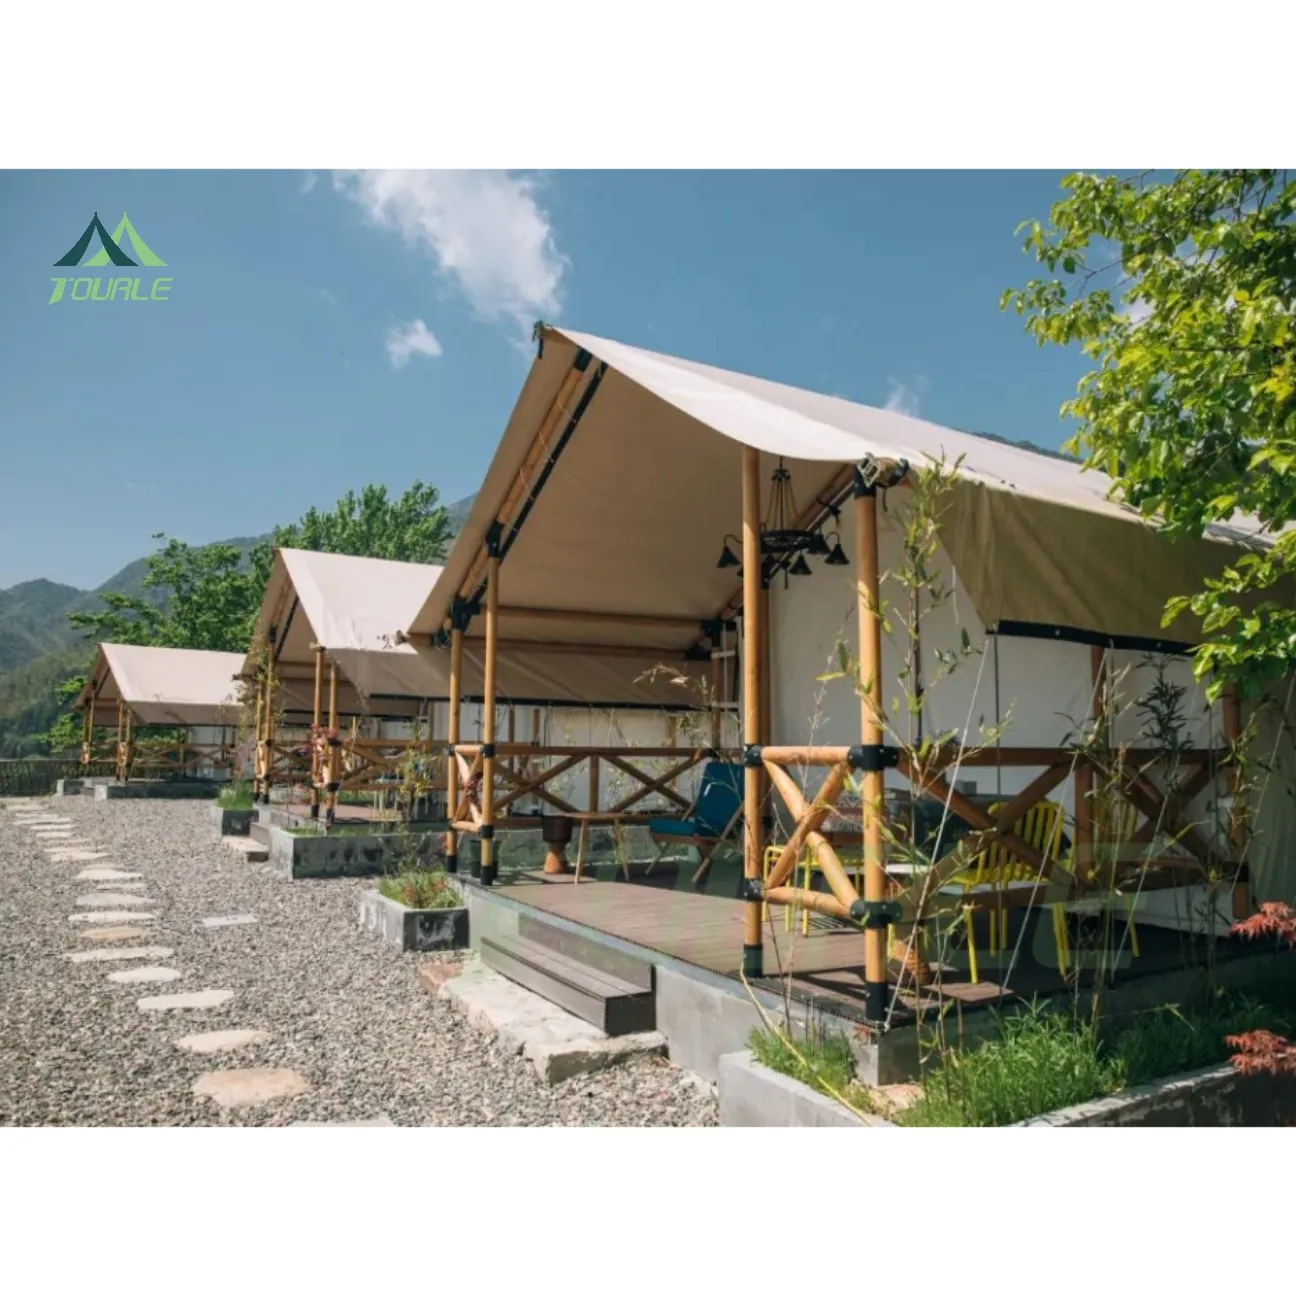 Outdoor grande glamping casa pré-construída Luxury Hotel projeto safari tenda pólo de madeira resort acampamento barraca praia barraca